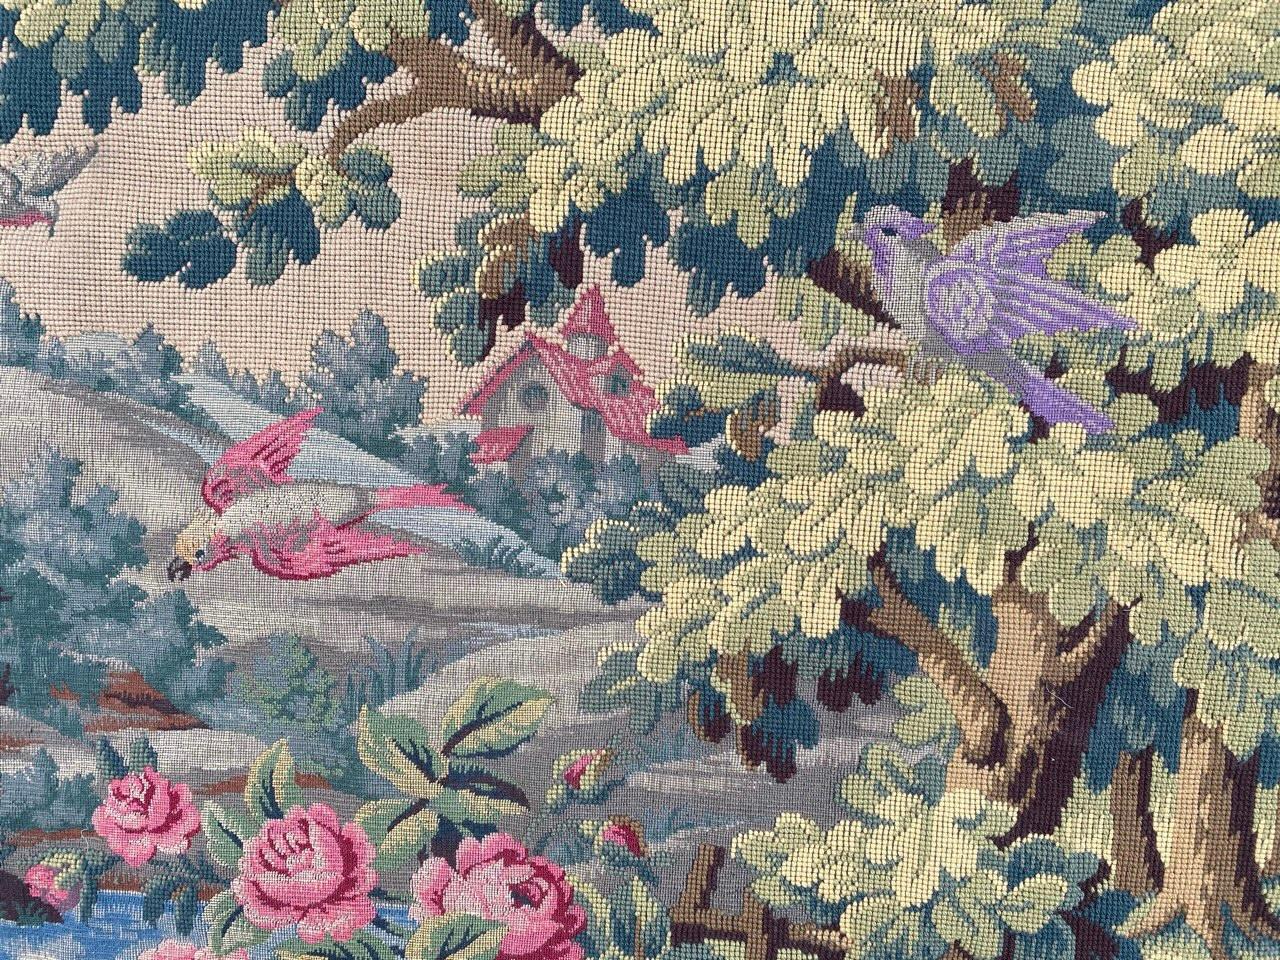 Hübscher französischer Wandteppich im Aubusson-Stil aus der Mitte des Jahrhunderts mit schönem Schloss- und Naturmotiv mit Vögeln und schönen Farben, komplett mit Wolle gewebt.